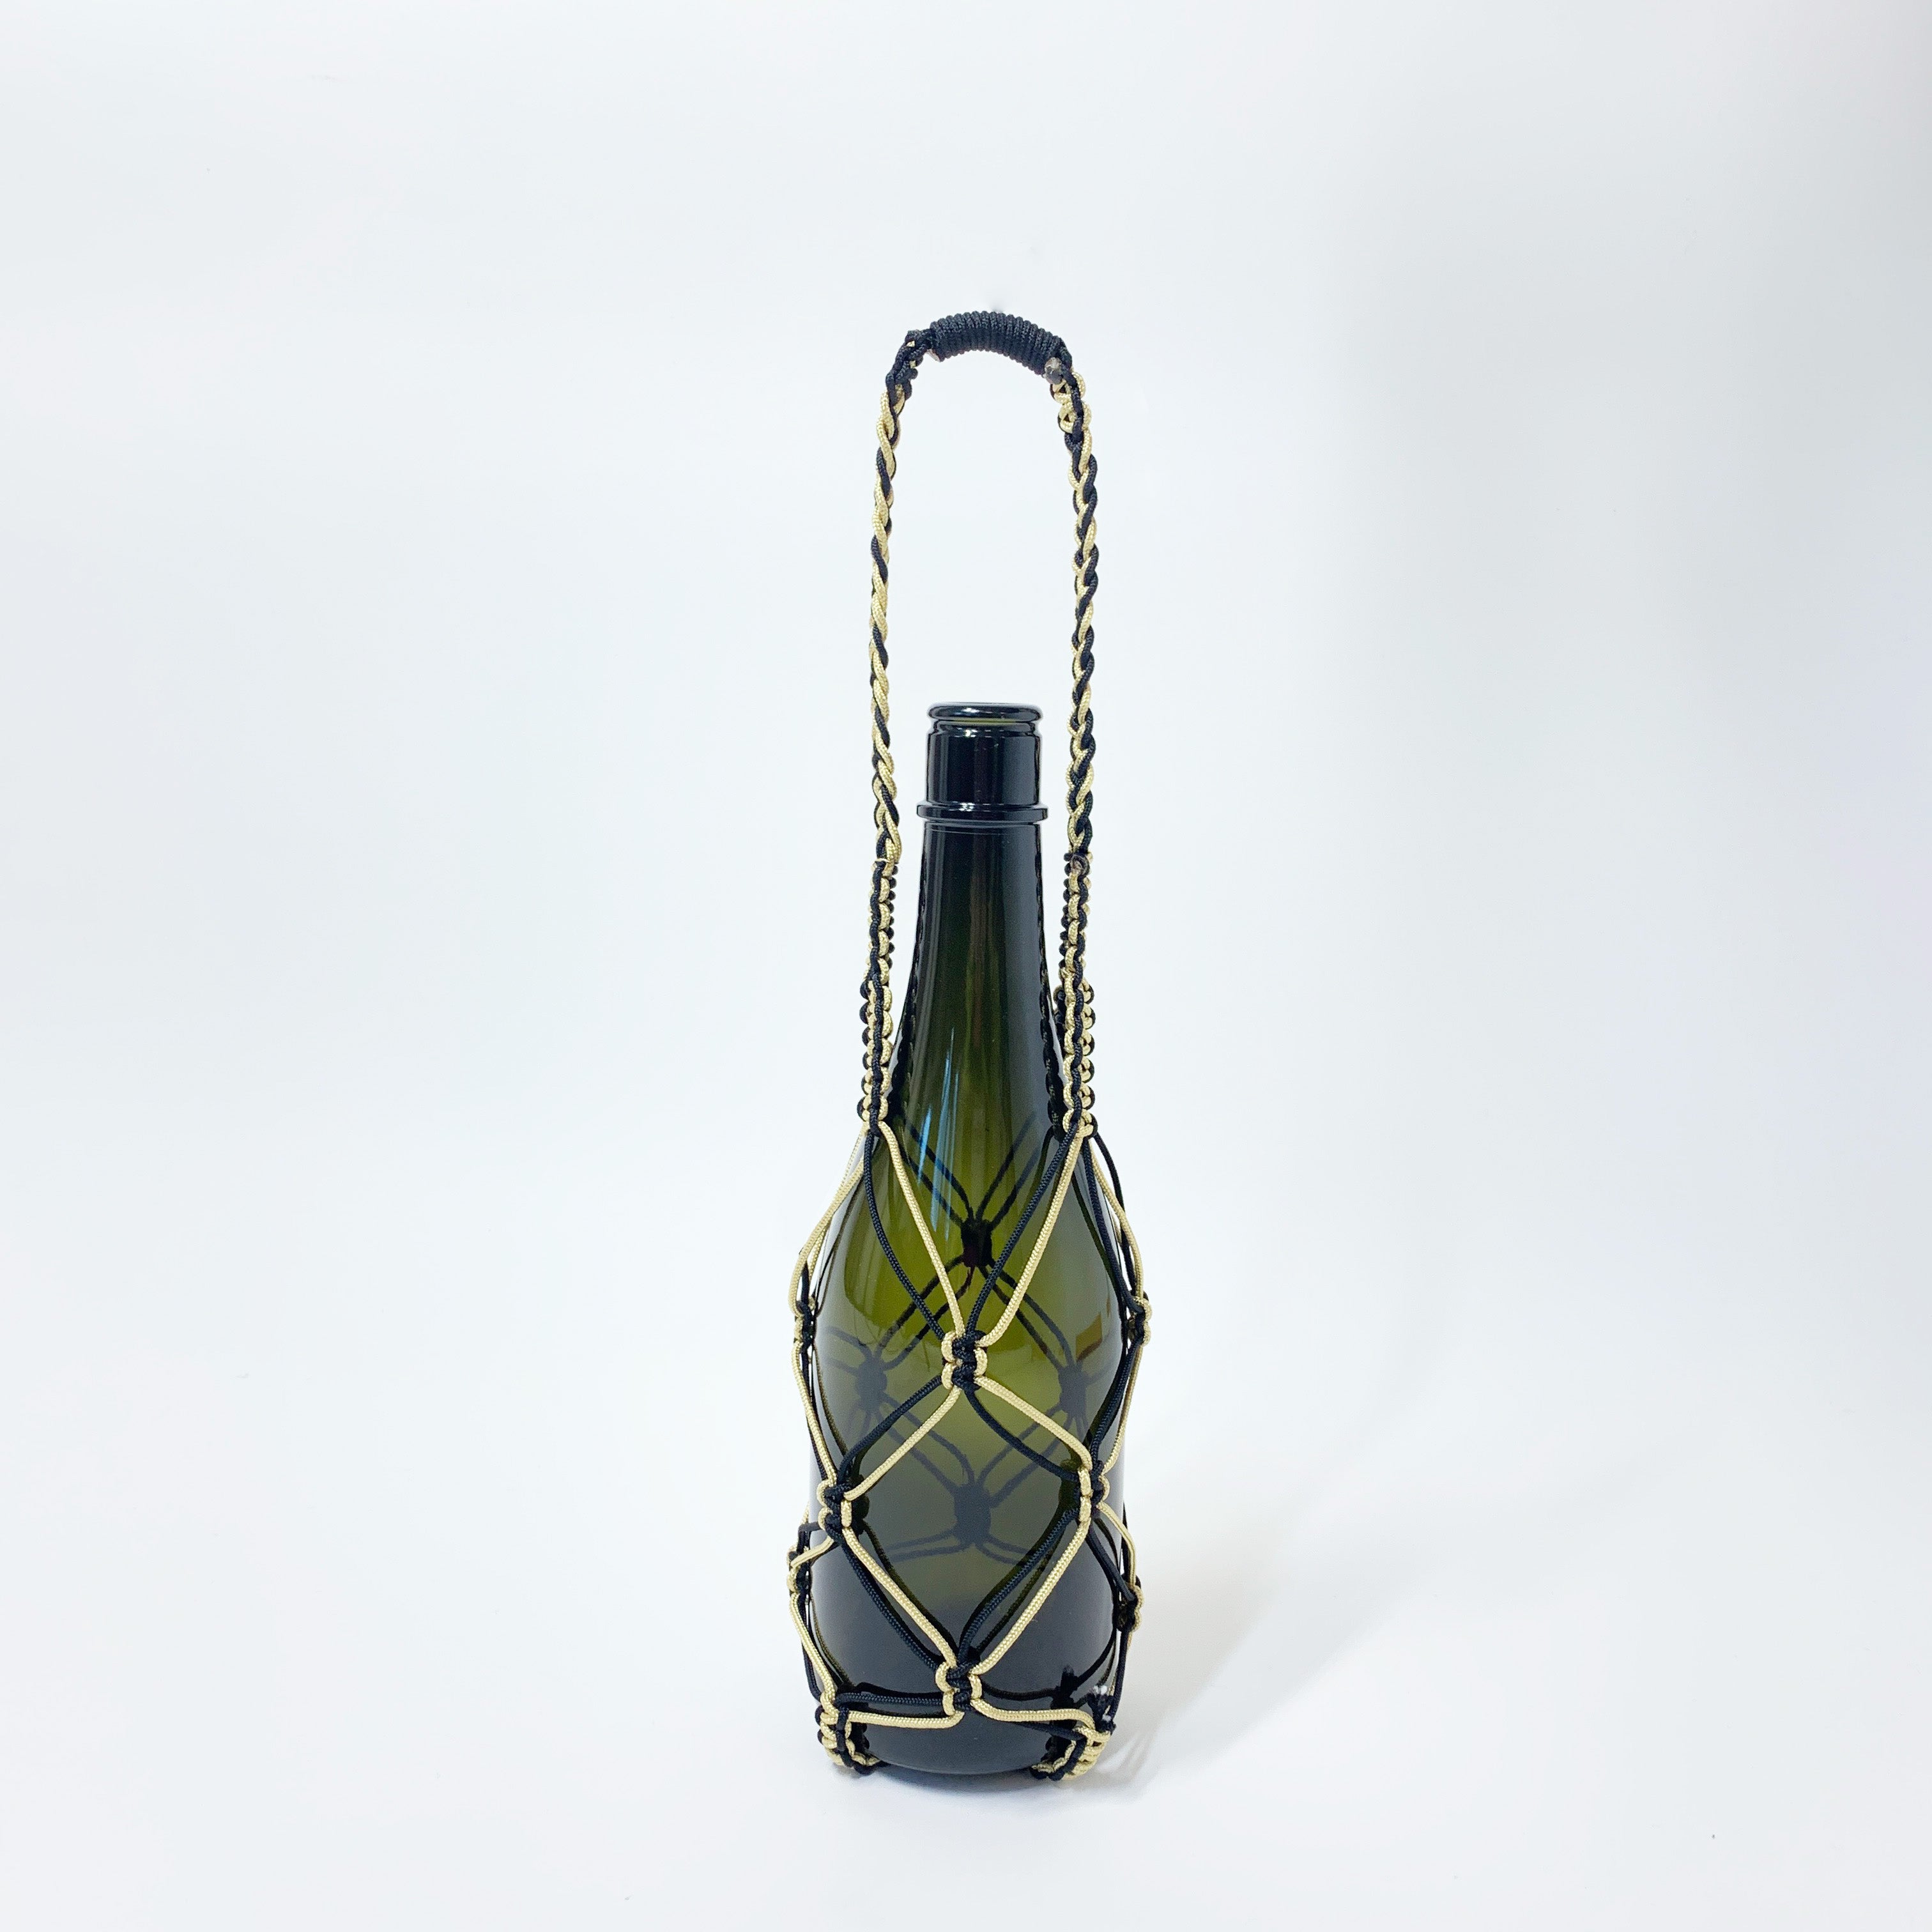 Handmade bottle bag